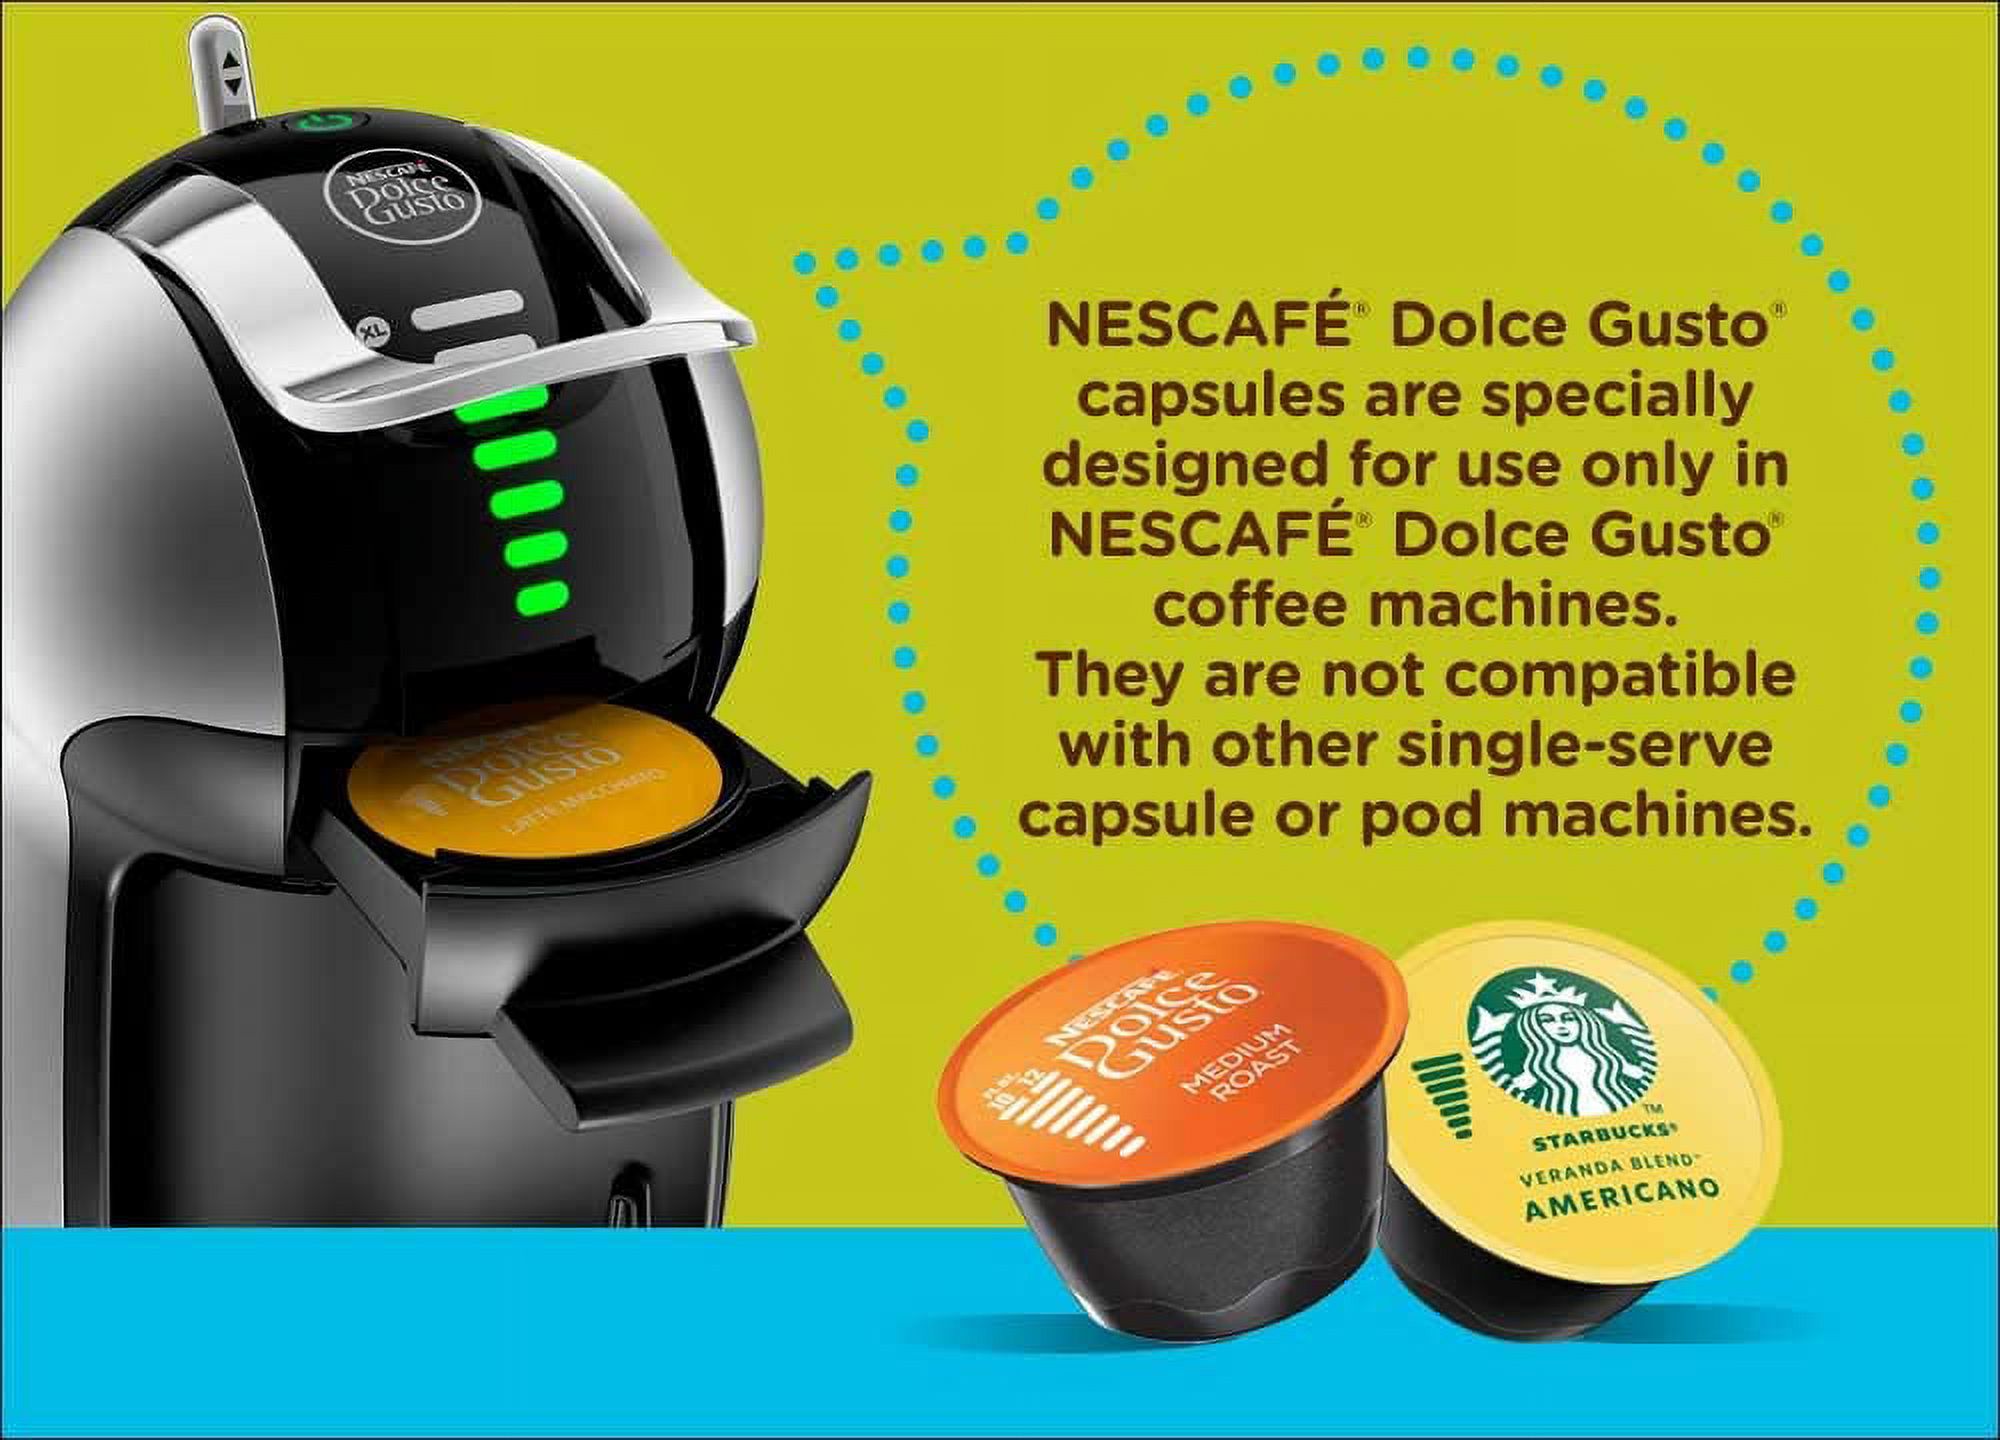 NESCAFE Dolce Gusto Genio 2 Coffee Machine, Single Serve Espresso and Cappuccino Pod Machine - image 4 of 6